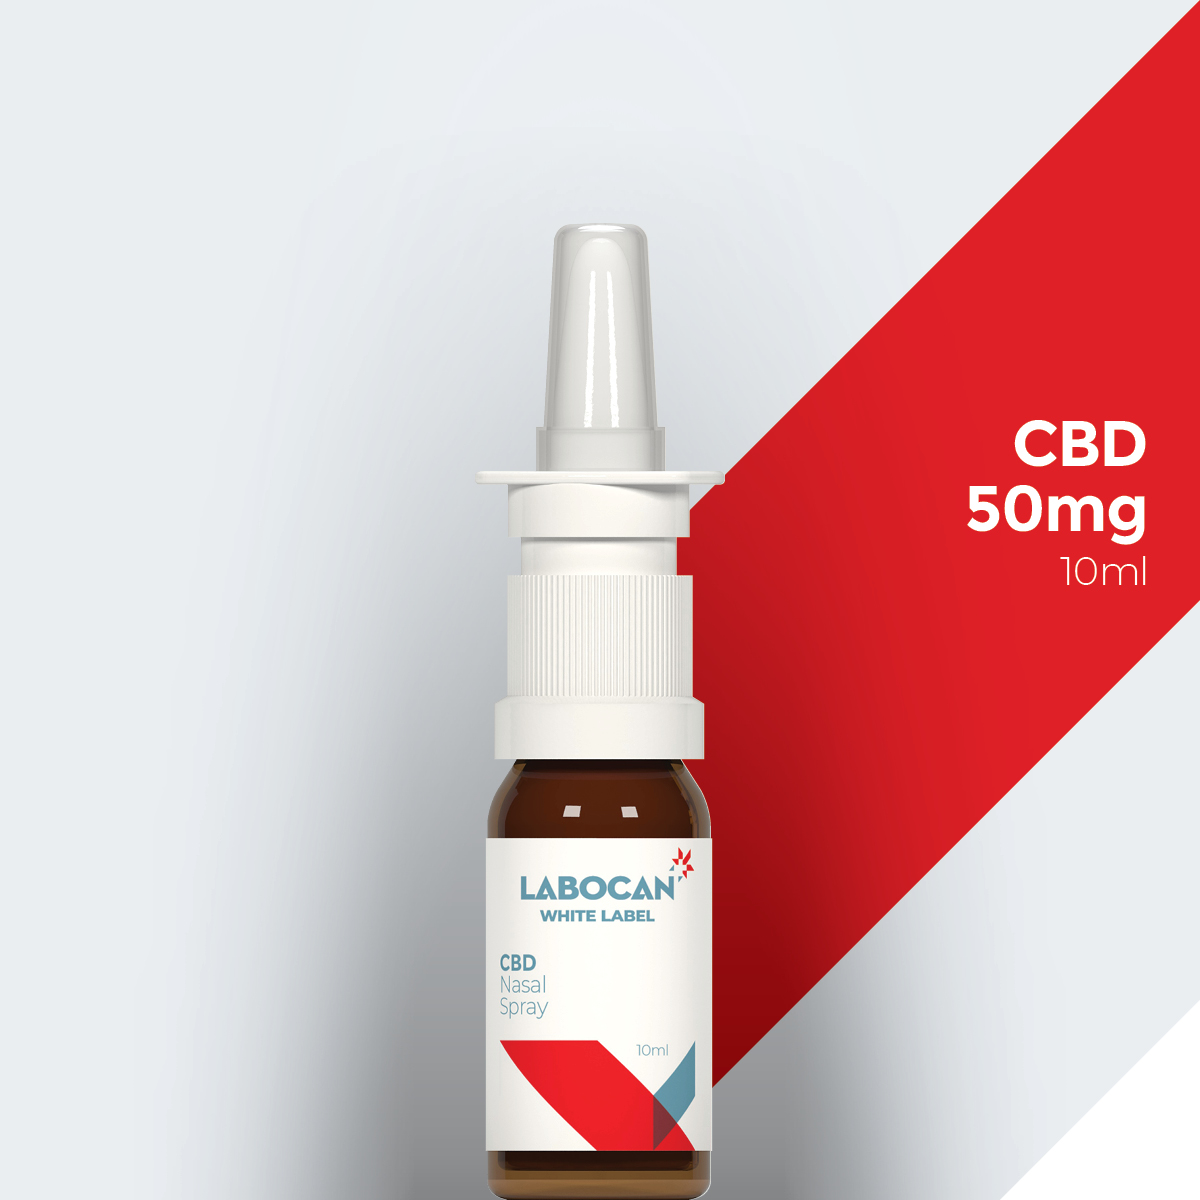 Labocan Spray nasal de CBD de marca blanca